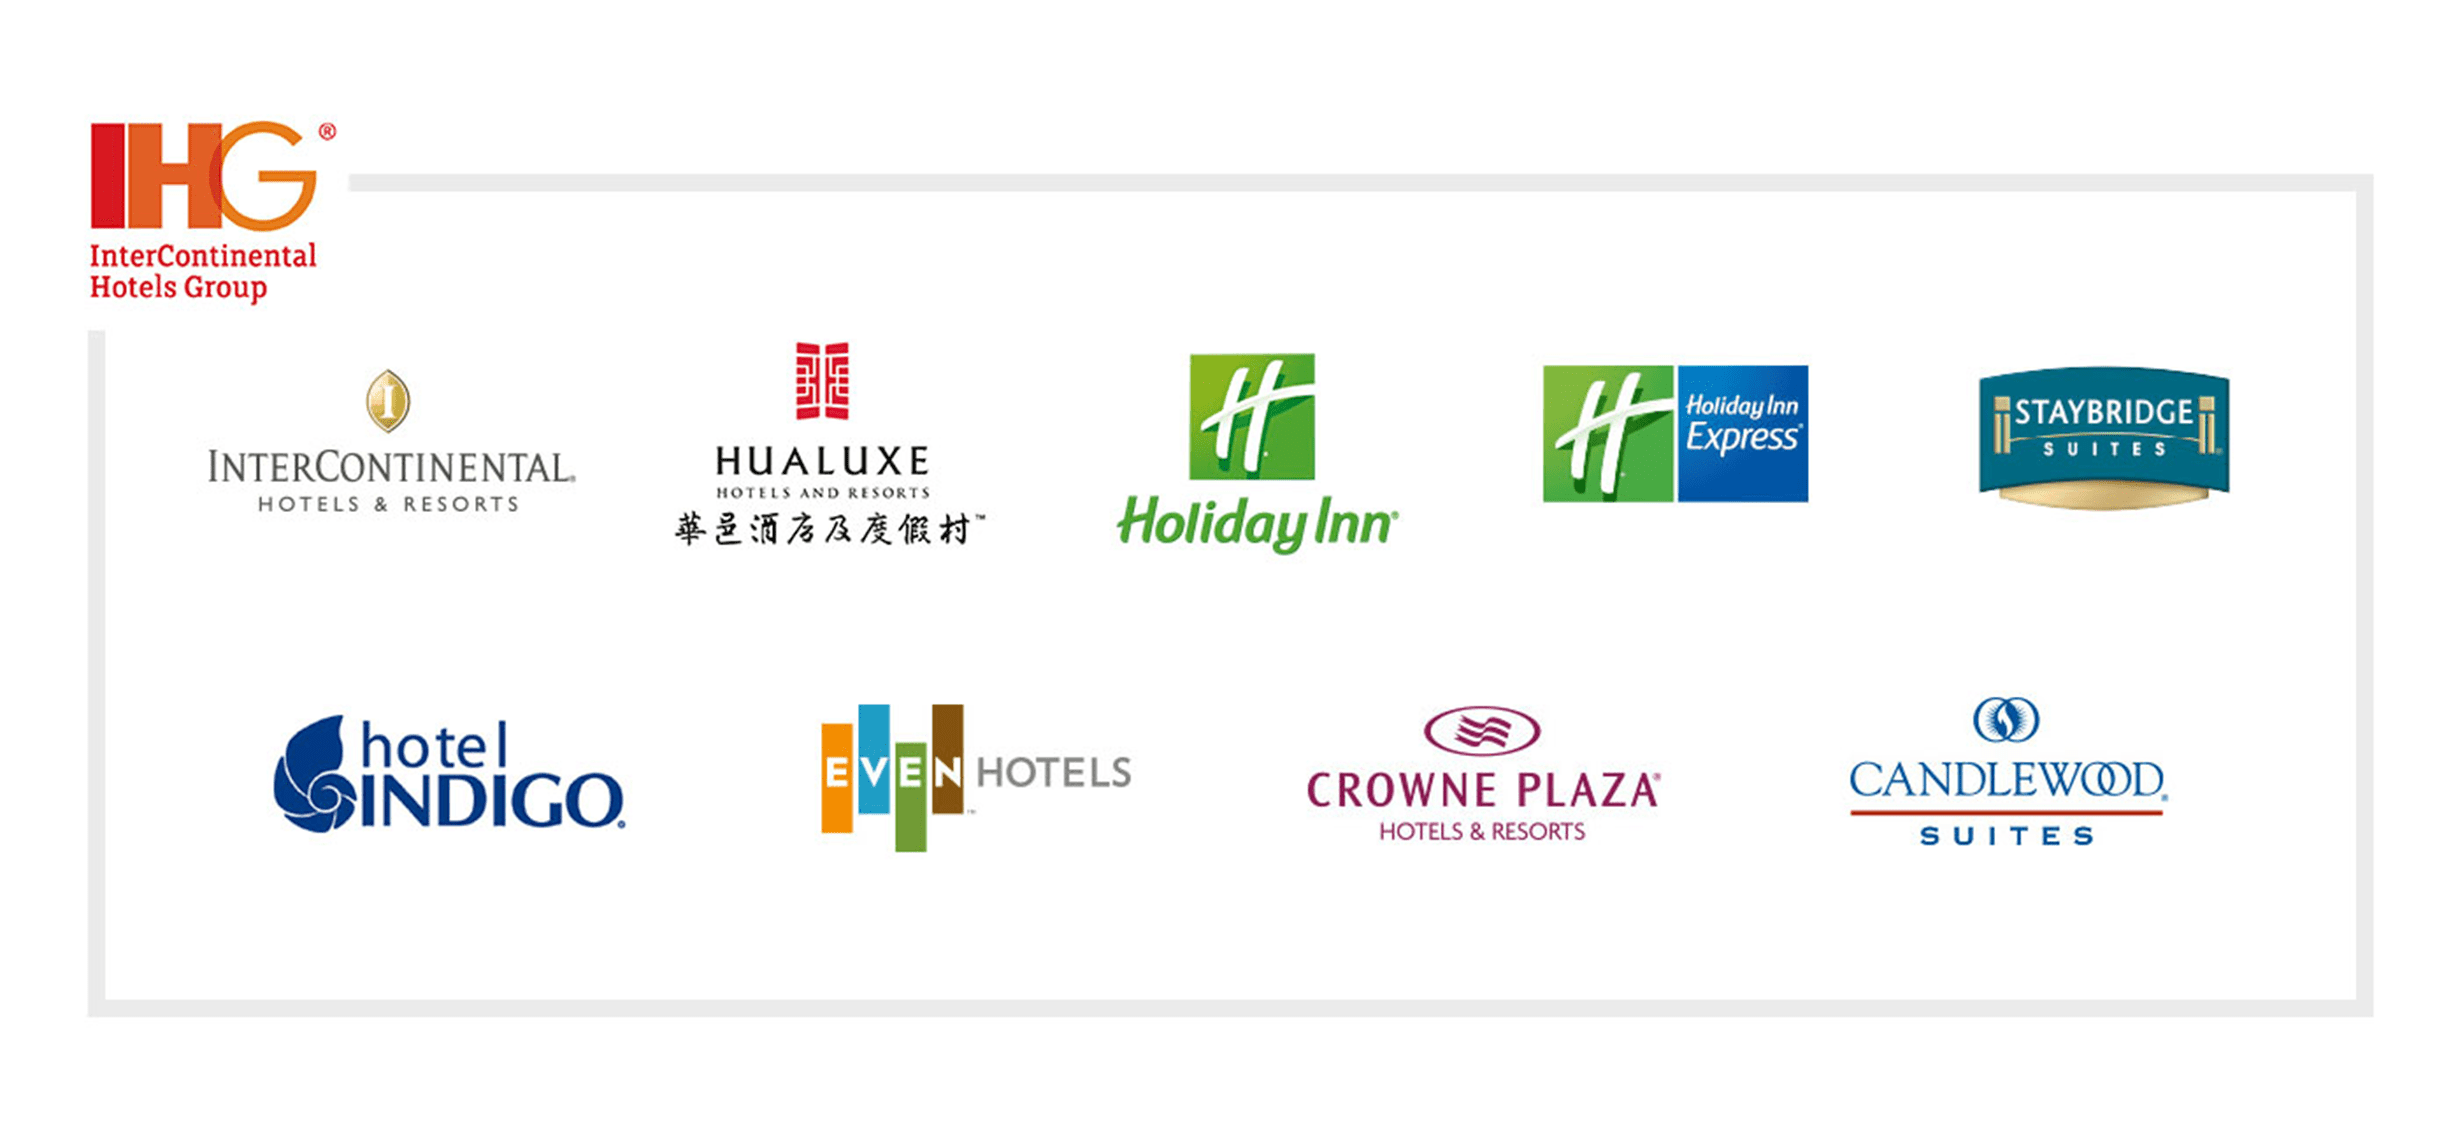 IHG's family of hotel brands